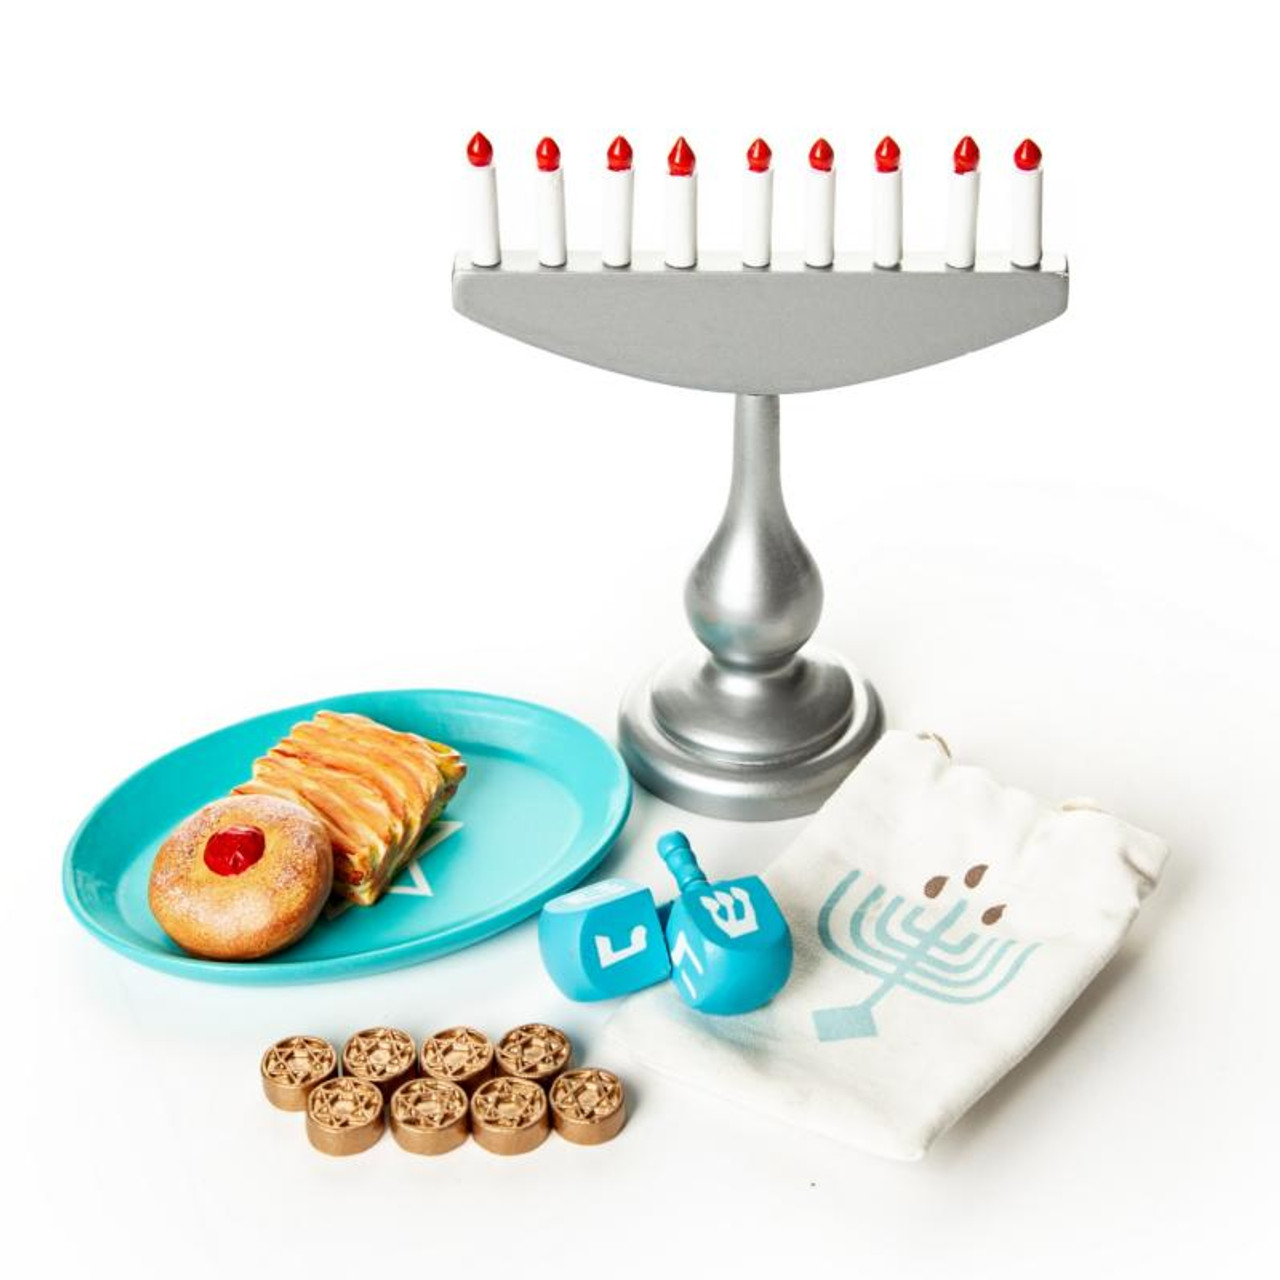 Hanukkah Kids Baking Gift Set